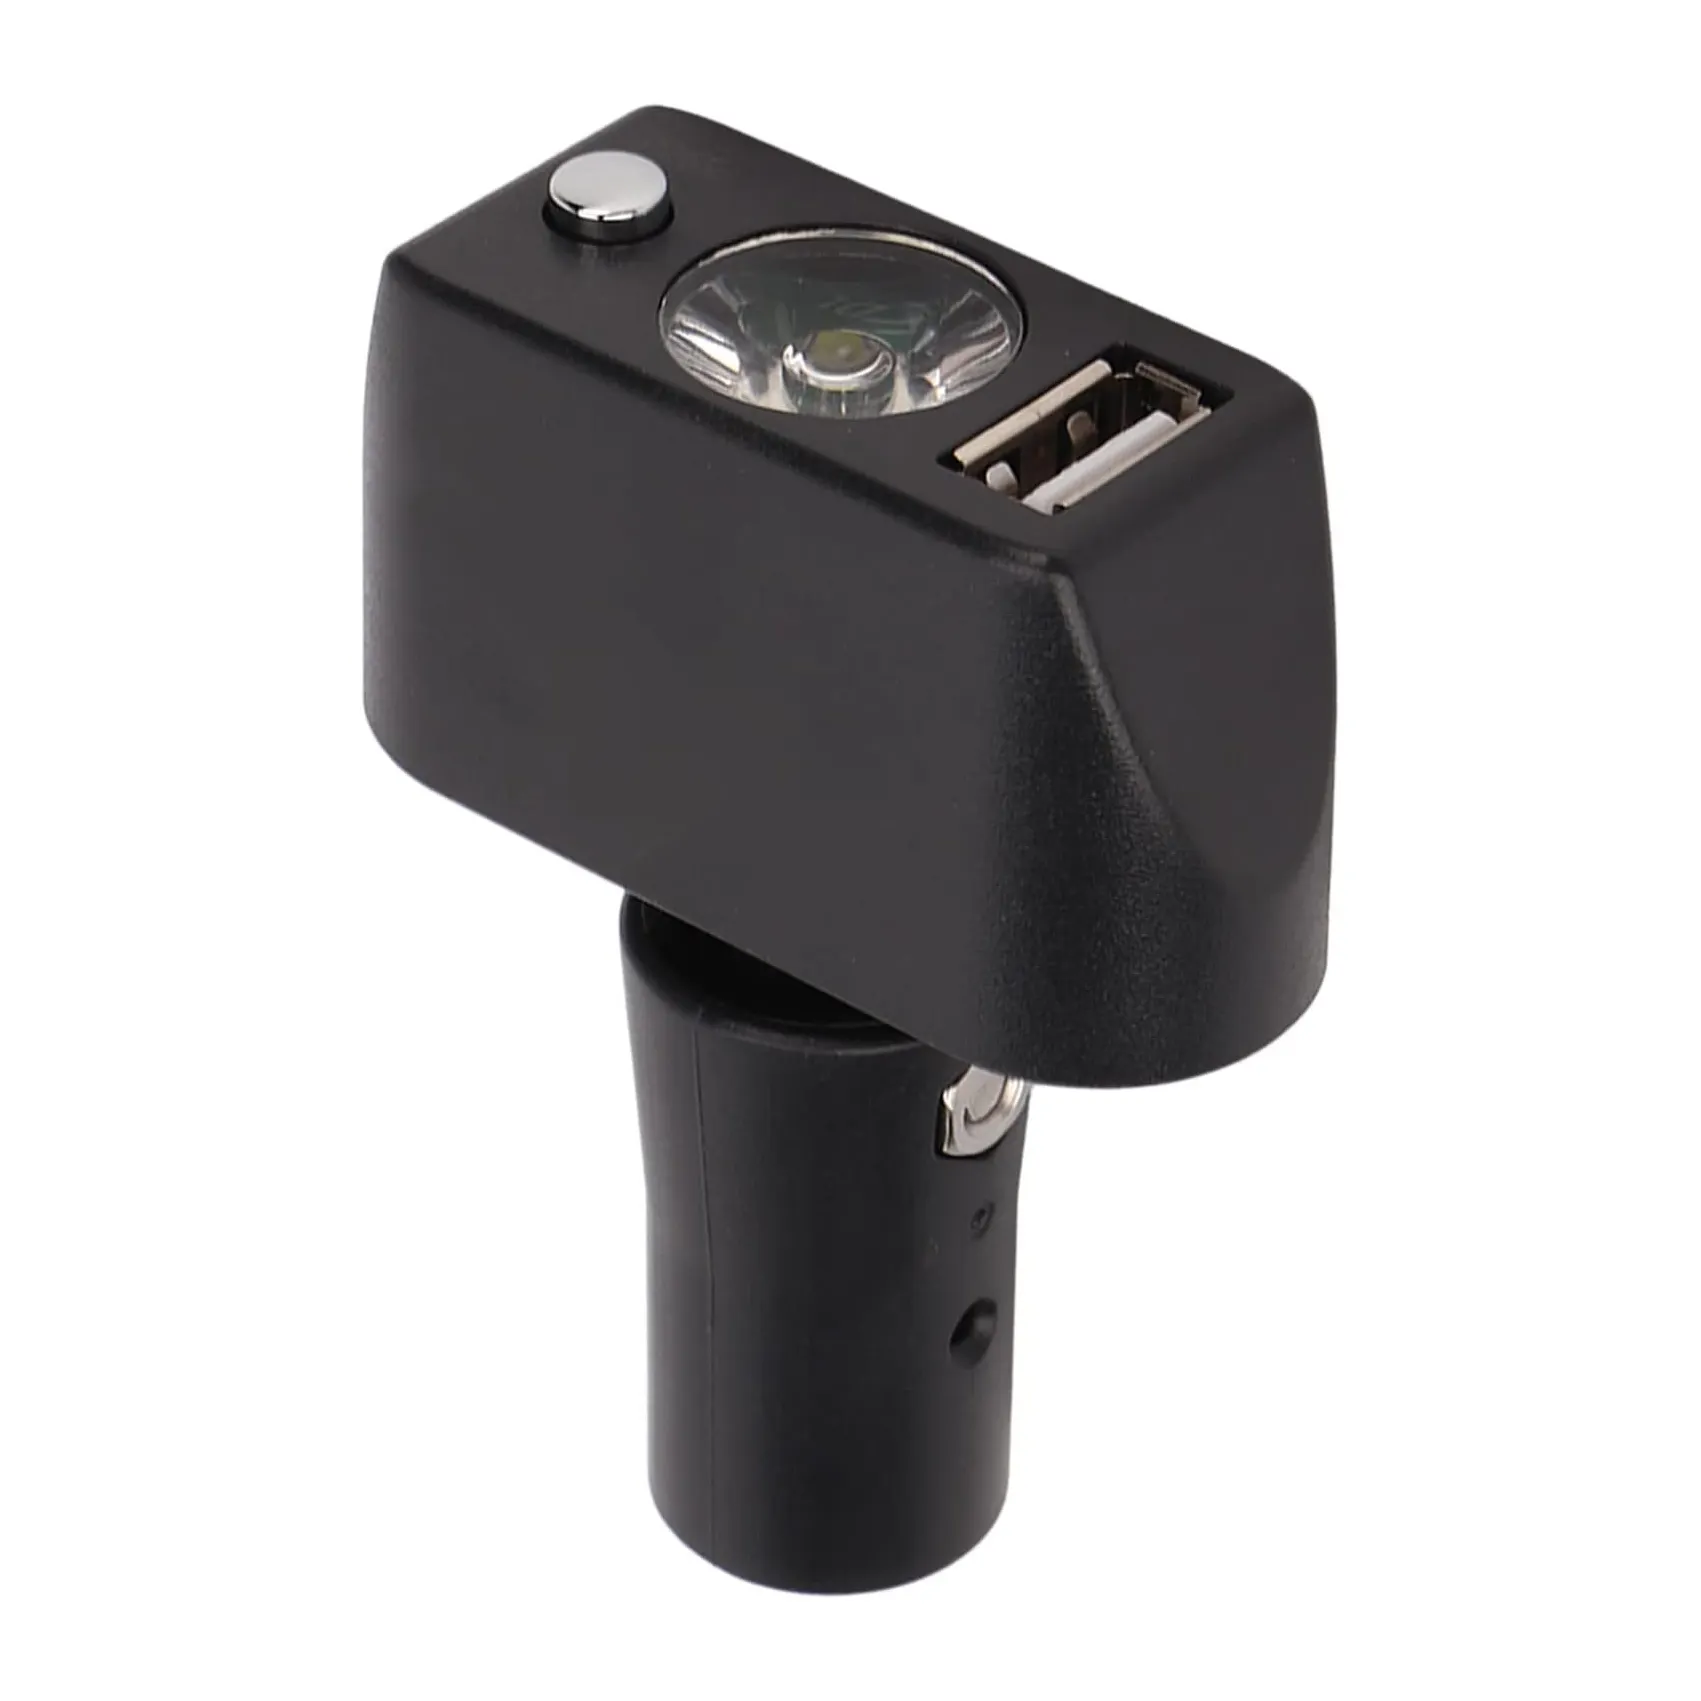 ไฟรถเข็นวีลแชร์ไฟฟ้า LED พร้อมพอร์ต USB 3ขาหัว XLR ใช้ชาร์จไฟ LED ปรับมุมได้สำหรับรถเข็นไฟ KSL-01